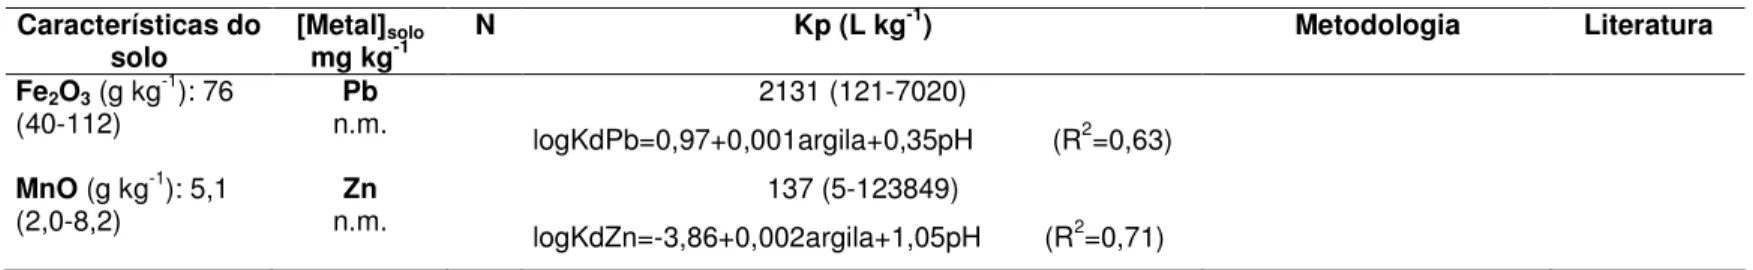 TABELA 3.2 - Trabalhos da literatura que relacionam Kp de metais com as características físico-químicas do solo 